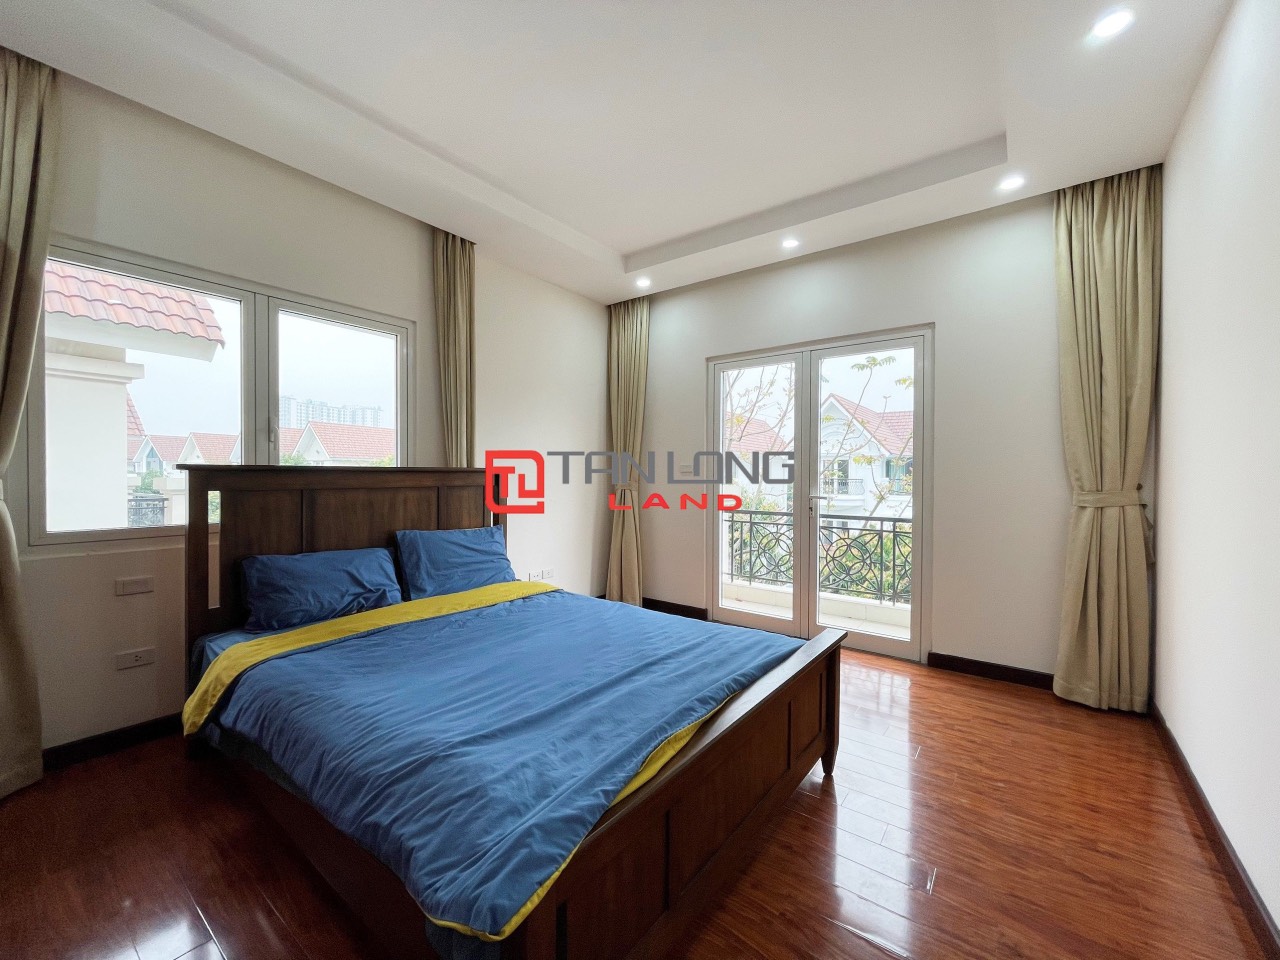 5 Bedrooms Duplex Villa for Rent with Reasonable Price in Vinhomes Riverside Long Bien 15